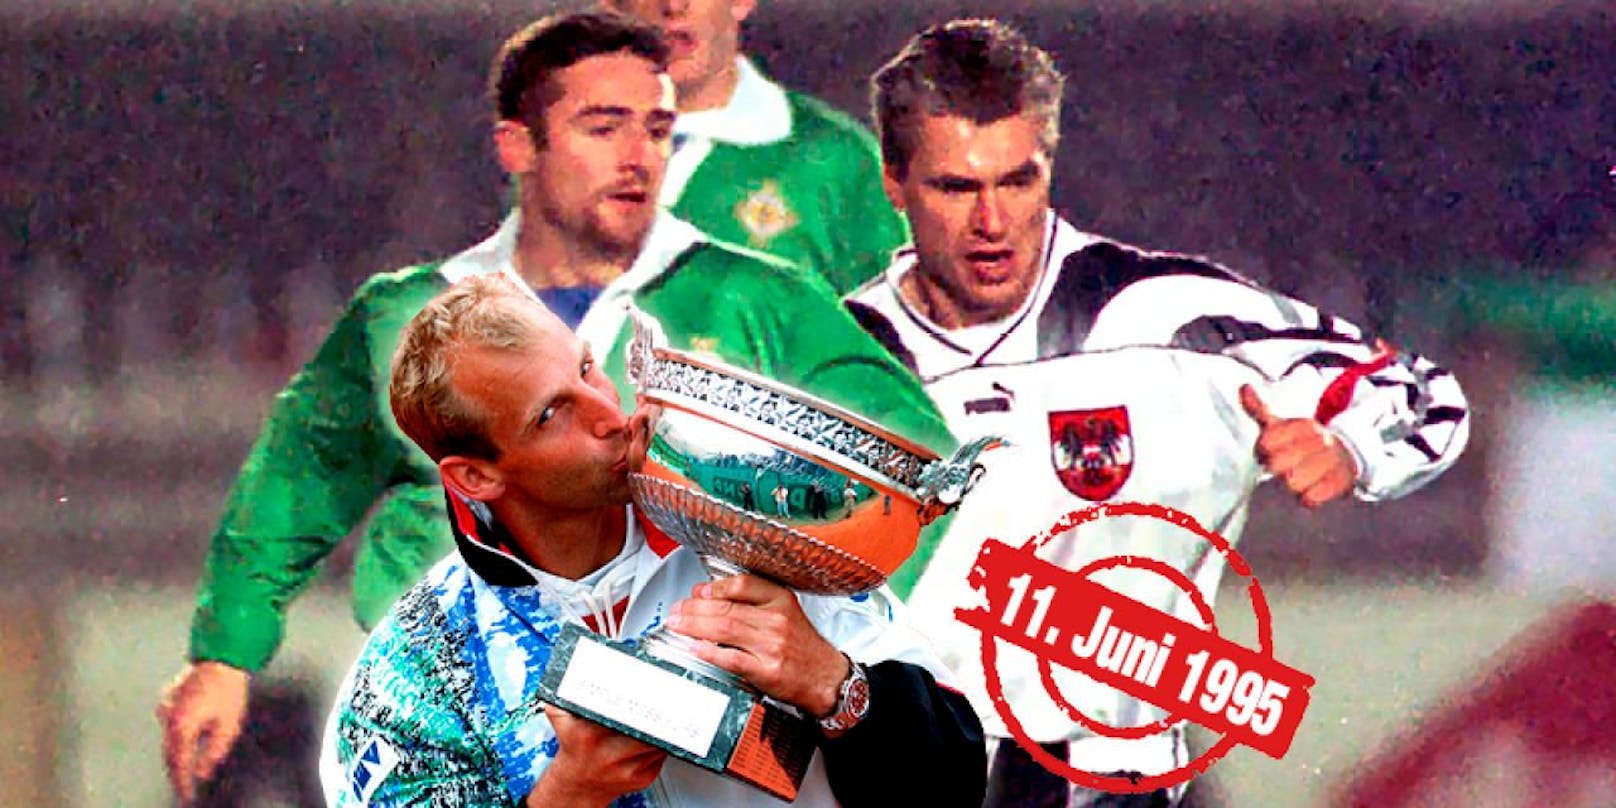 Am 11. Juni 1995 jubelten Thomas Muster bei den French Open und das österreichische Nationalteam beim Sieg in Irland.